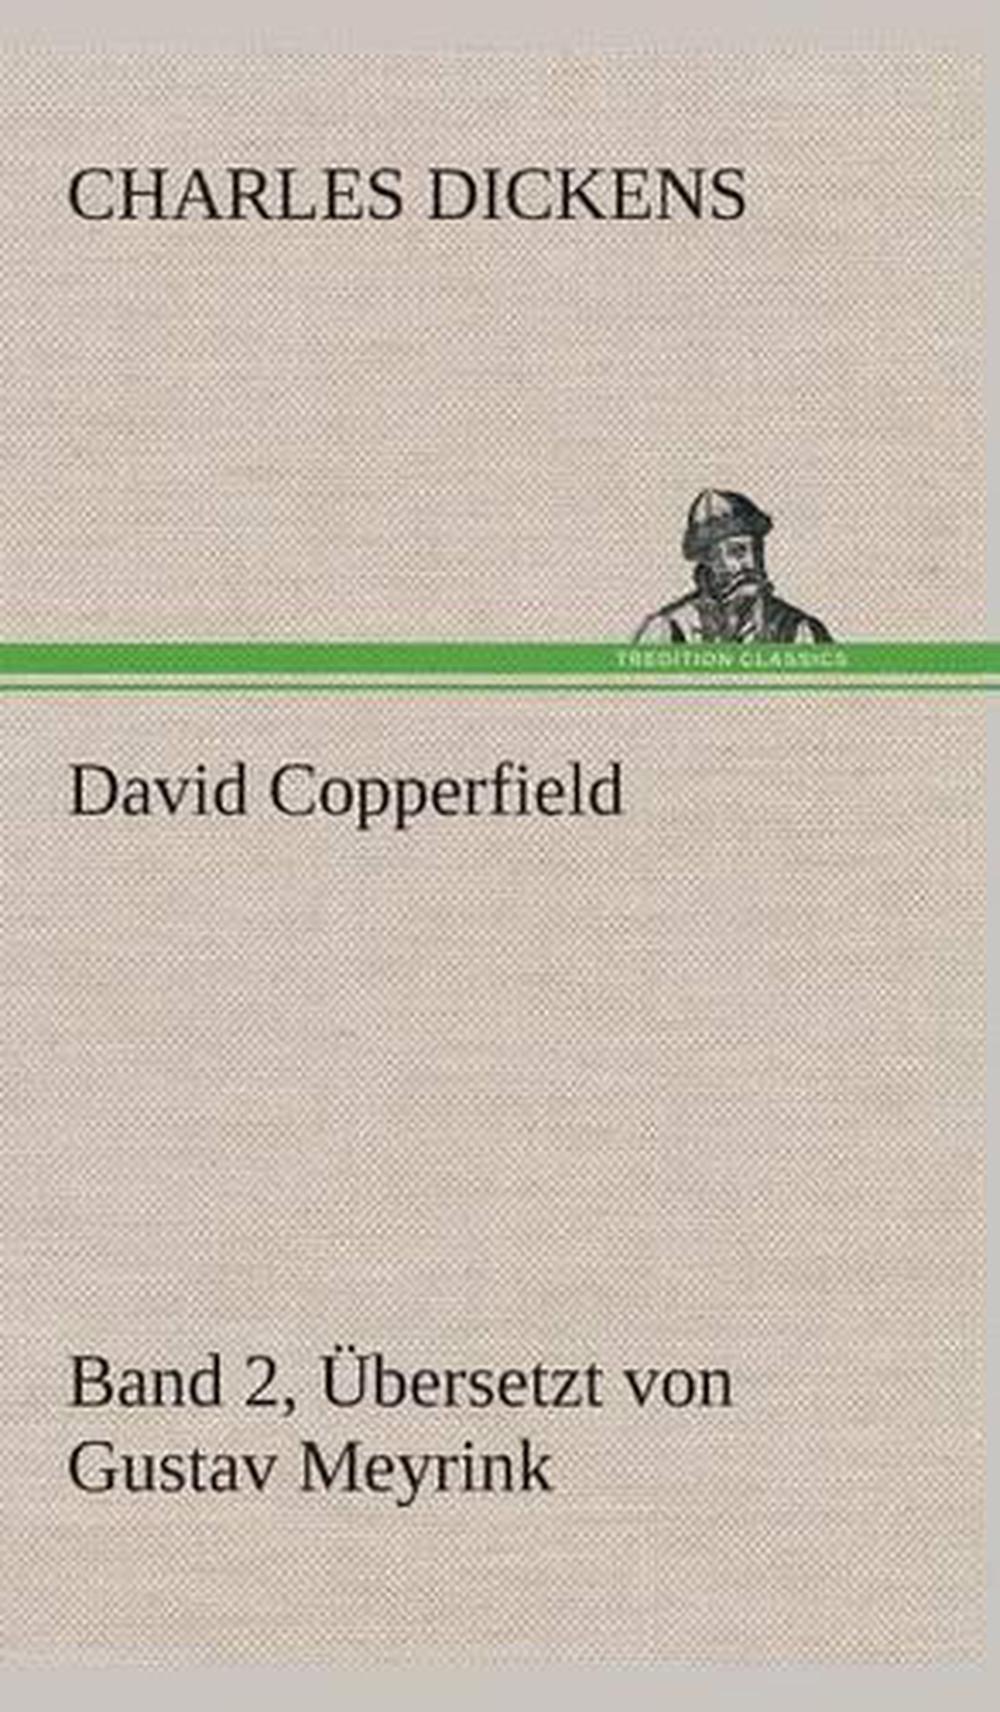 David Copperfield - Band 2, Ubersetzt Von Gustav Meyrink by Charles Dickens (Ger 9783849533632 ...